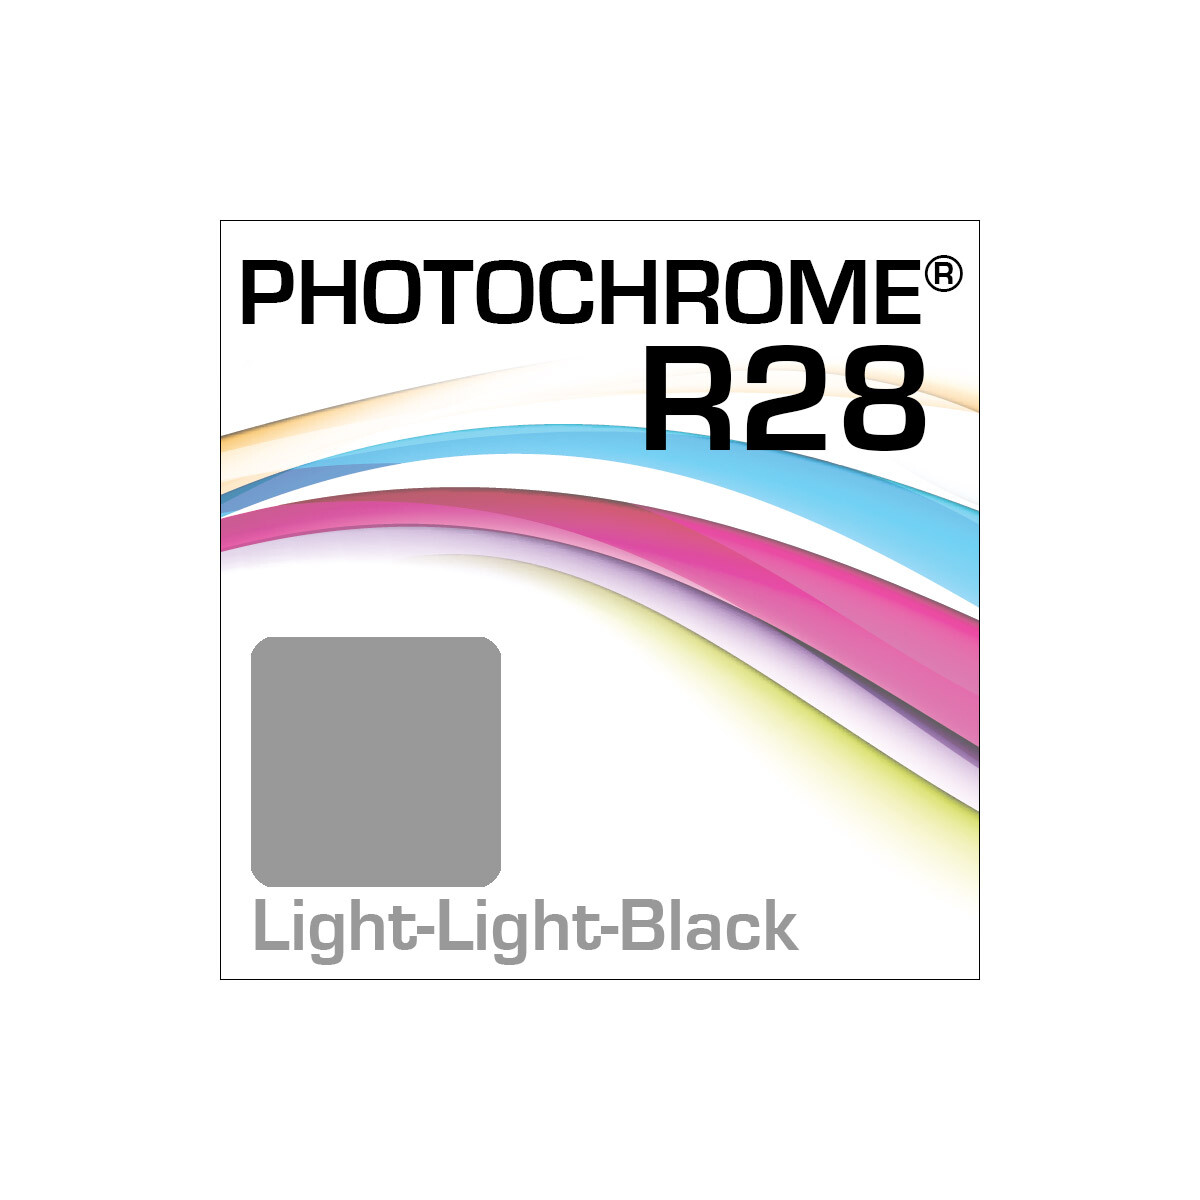 Lyson Photochrome R28 Bottle Light-Light-Black